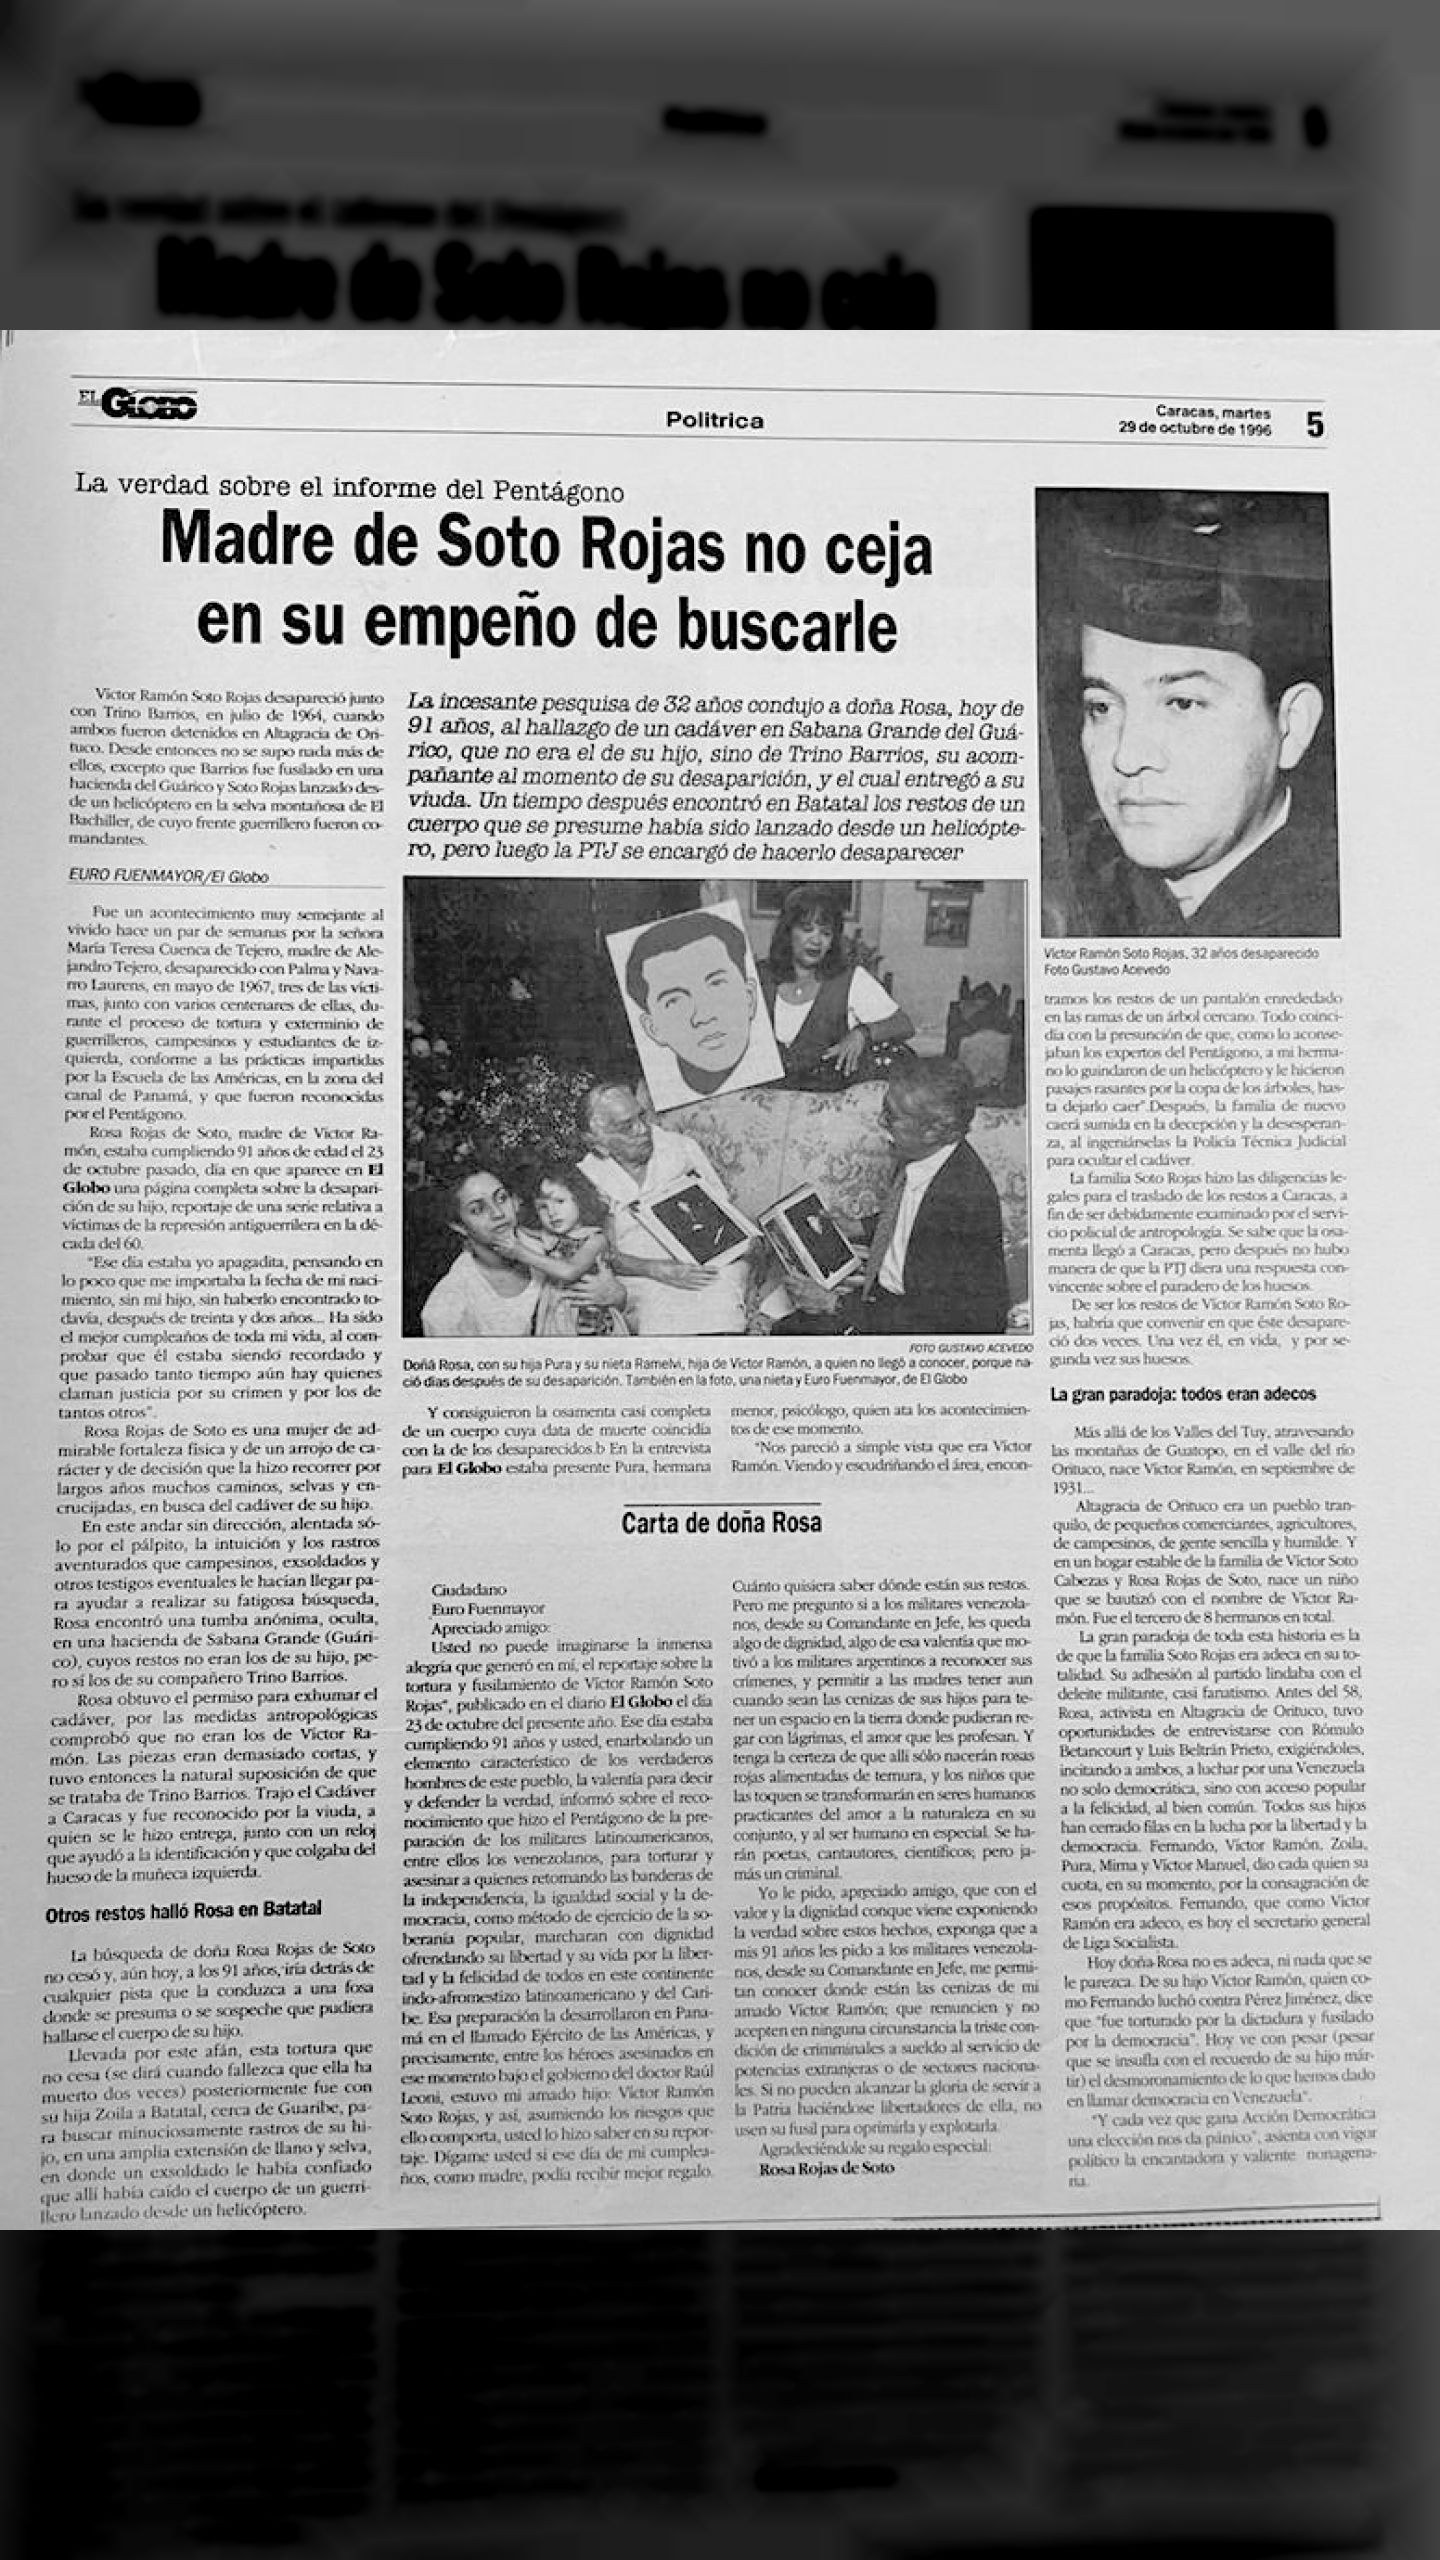 La verdad sobre los informes del Pentágono, Madre de Soto Rojas no ceja en su empeño de buscarle (El Globo, 29 de octubre 1996)